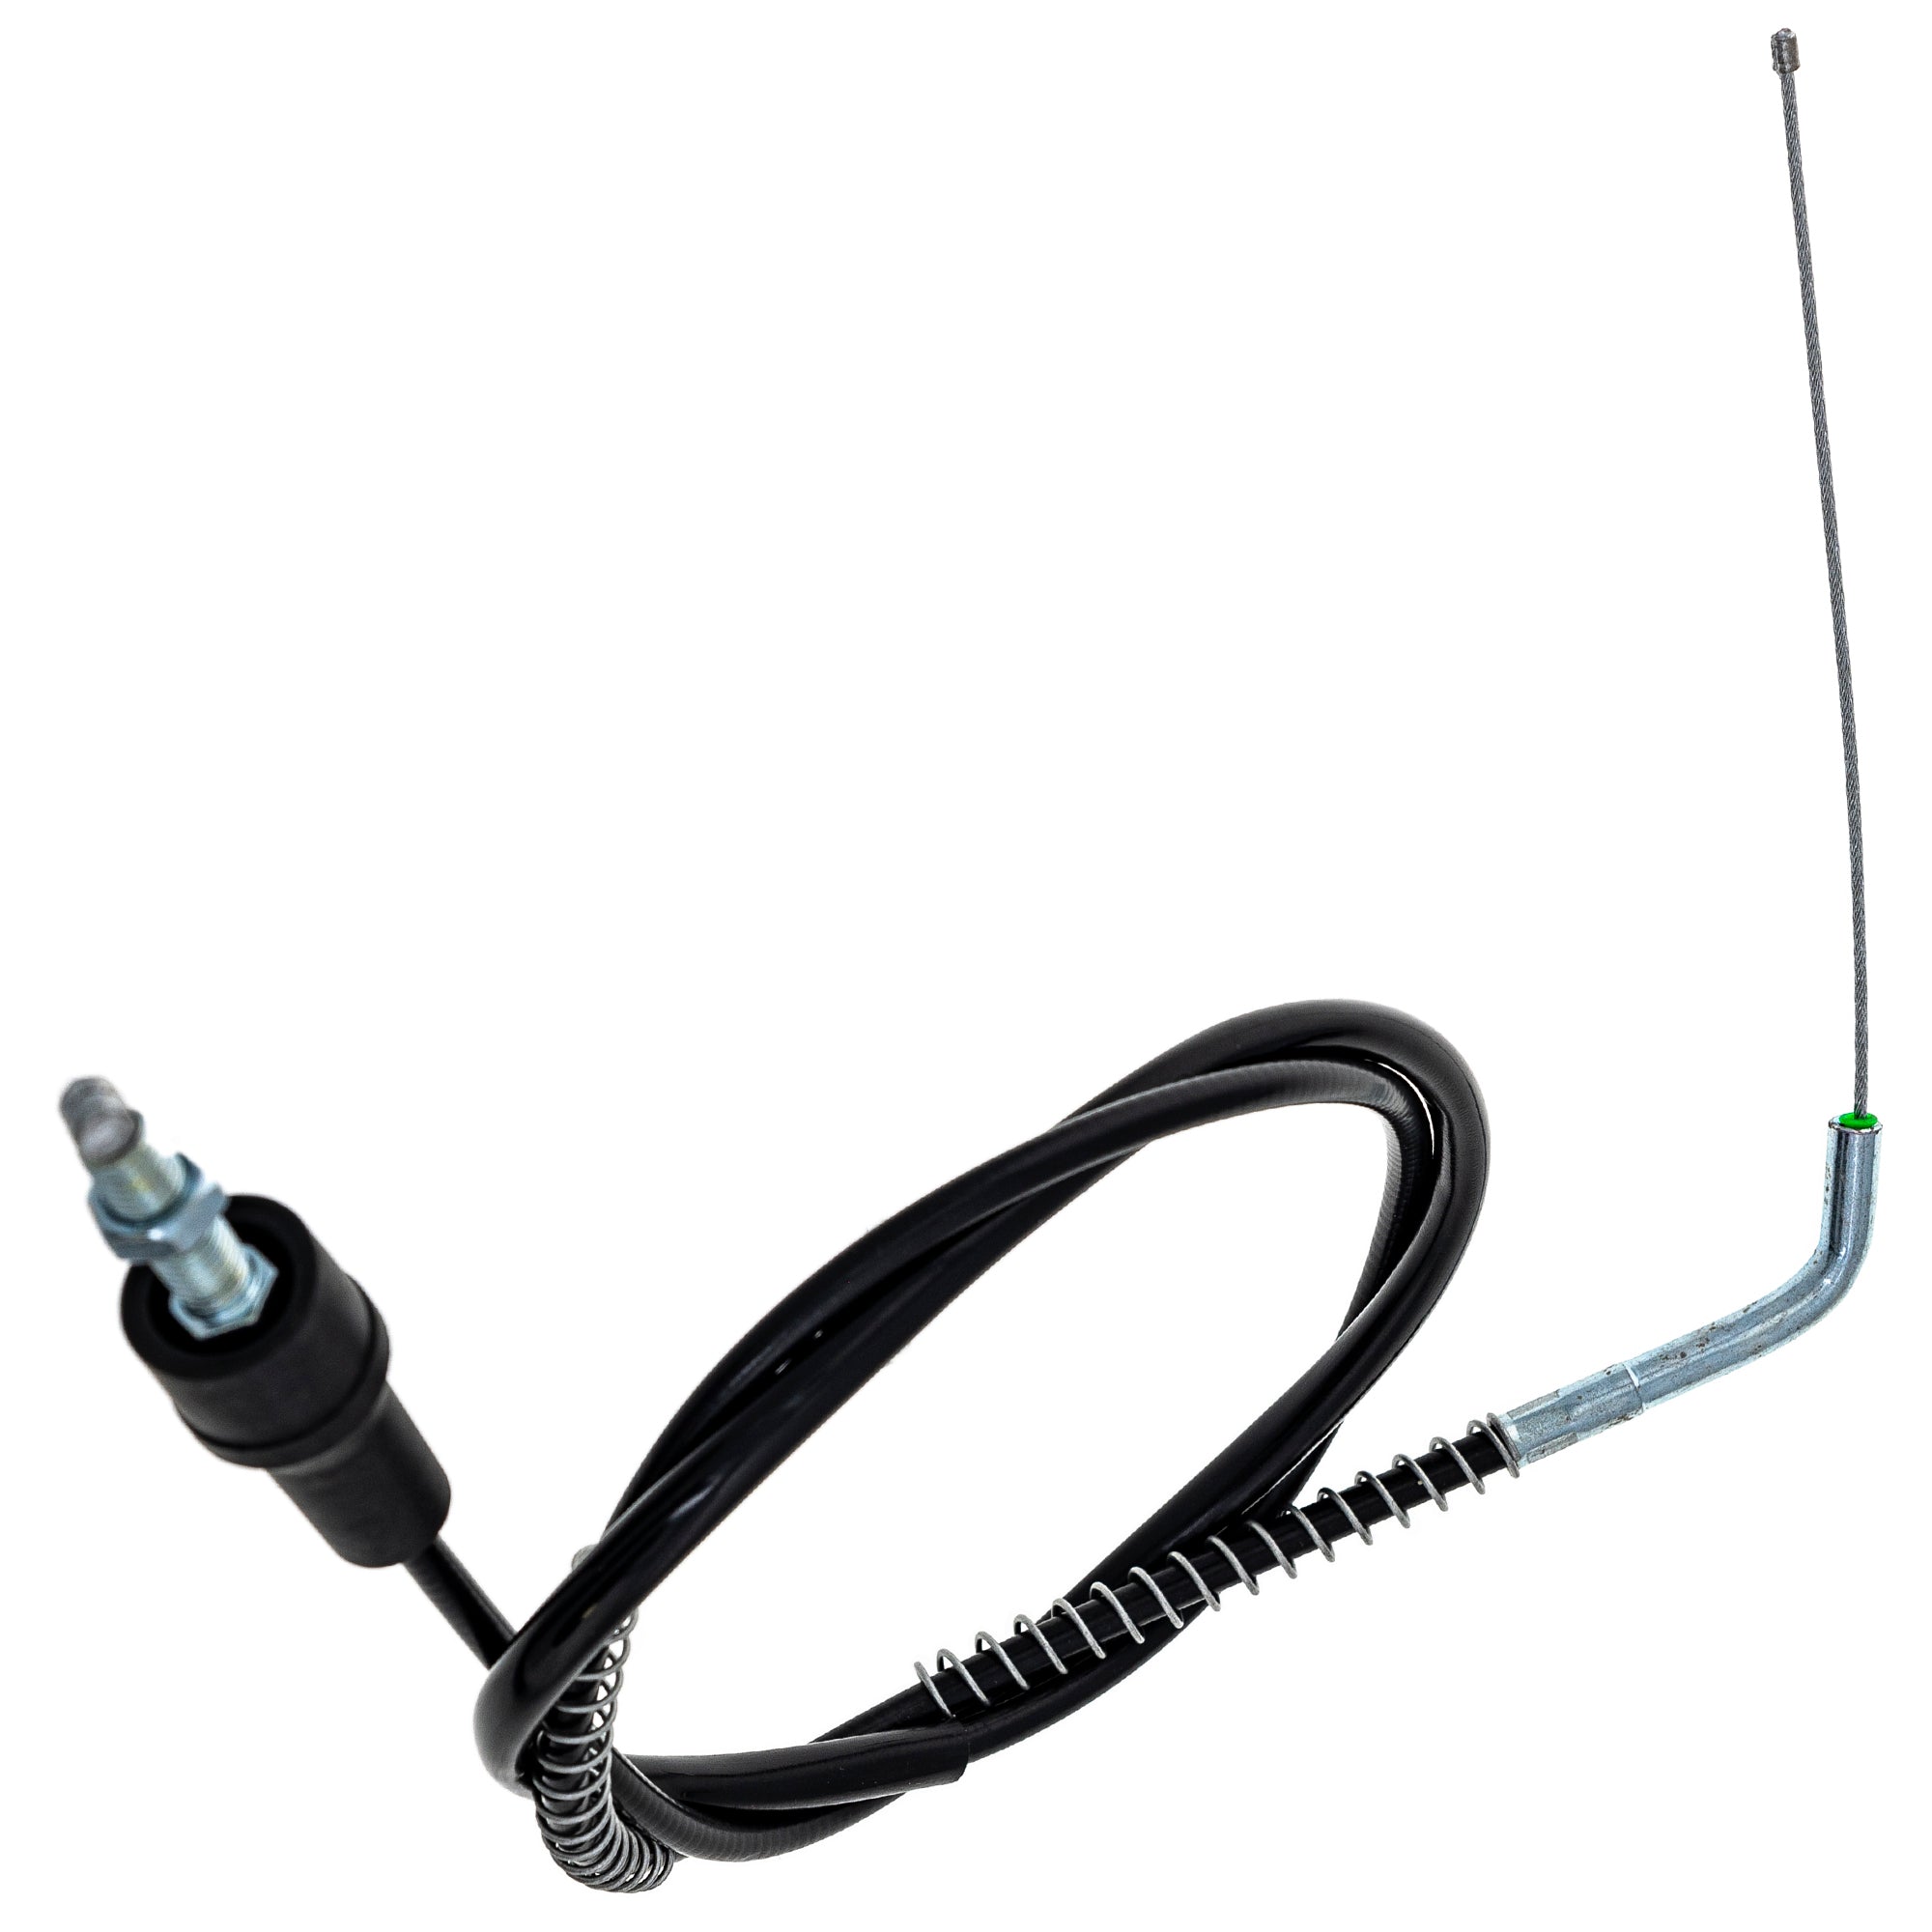 Throttle Cable For Suzuki 58300-27C21 58300-27C20 58300-14X08 58300-14X07 58300-14600 58300-14310